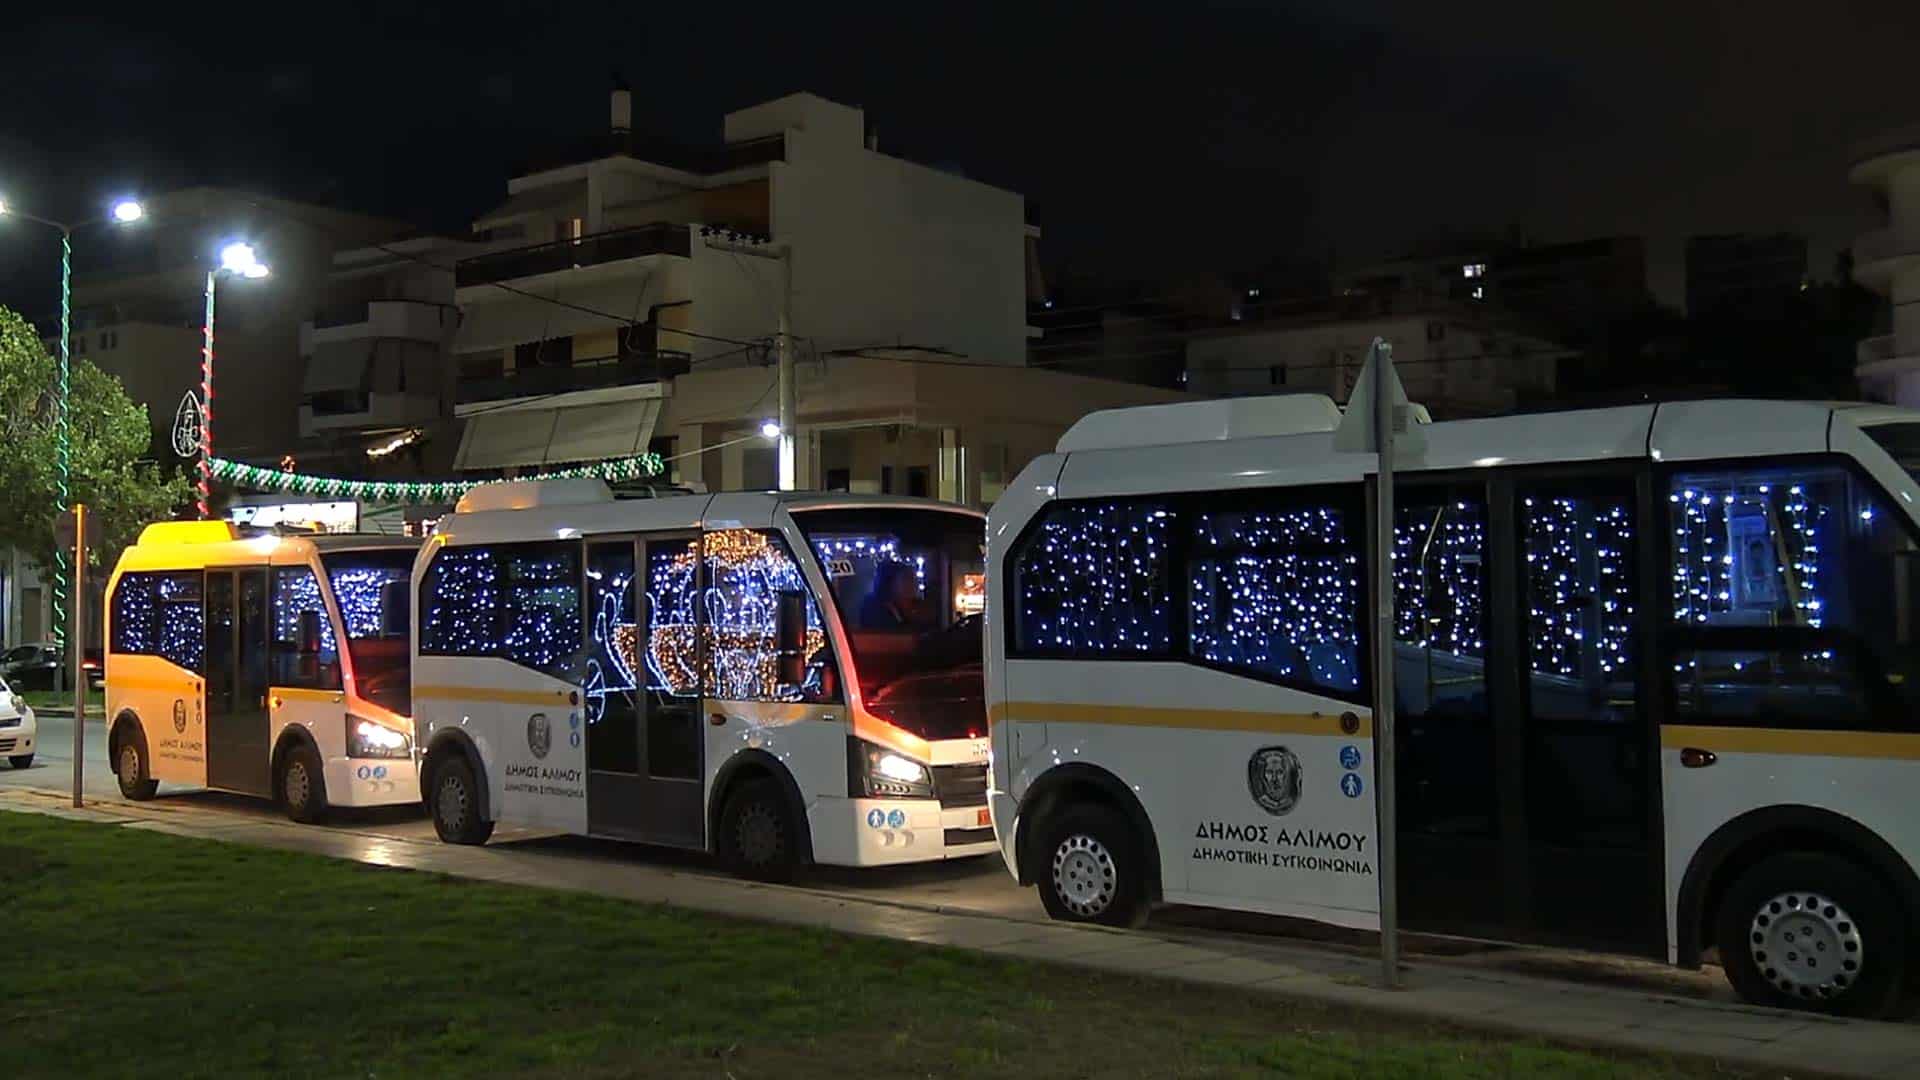 Τα δημοτικά λεωφορεία του Αλίμου μεταμορφώνονται σε «λεωφωτεία»